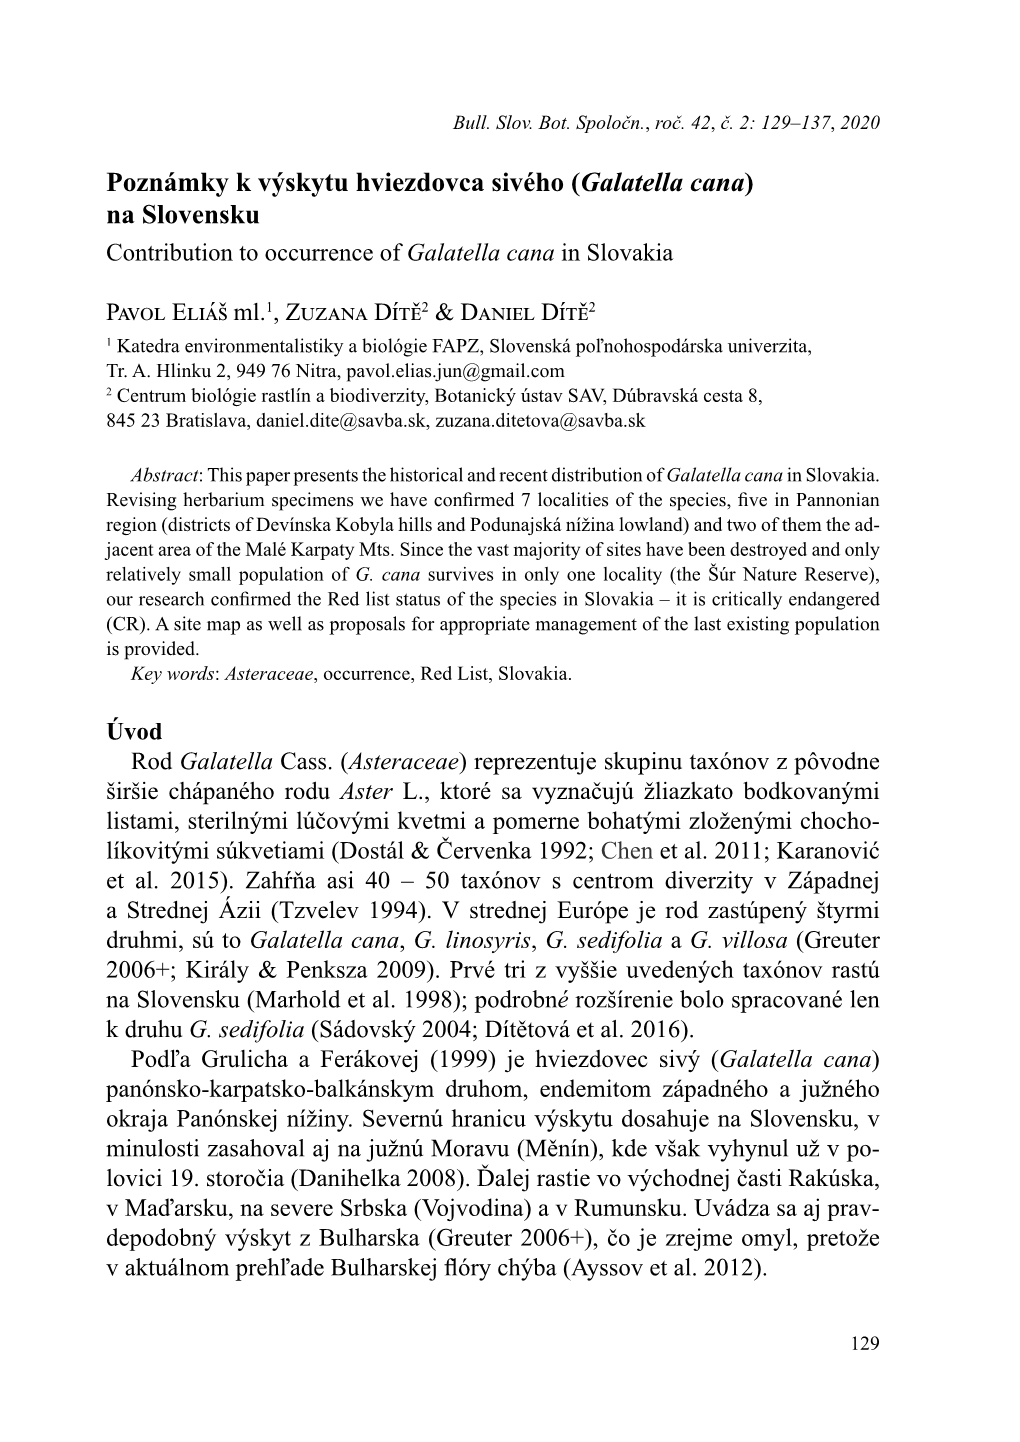 Poznámky K Výskytu Hviezdovca Sivého (Galatella Cana) Na Slovensku Contribution to Occurrence of Galatella Cana in Slovakia